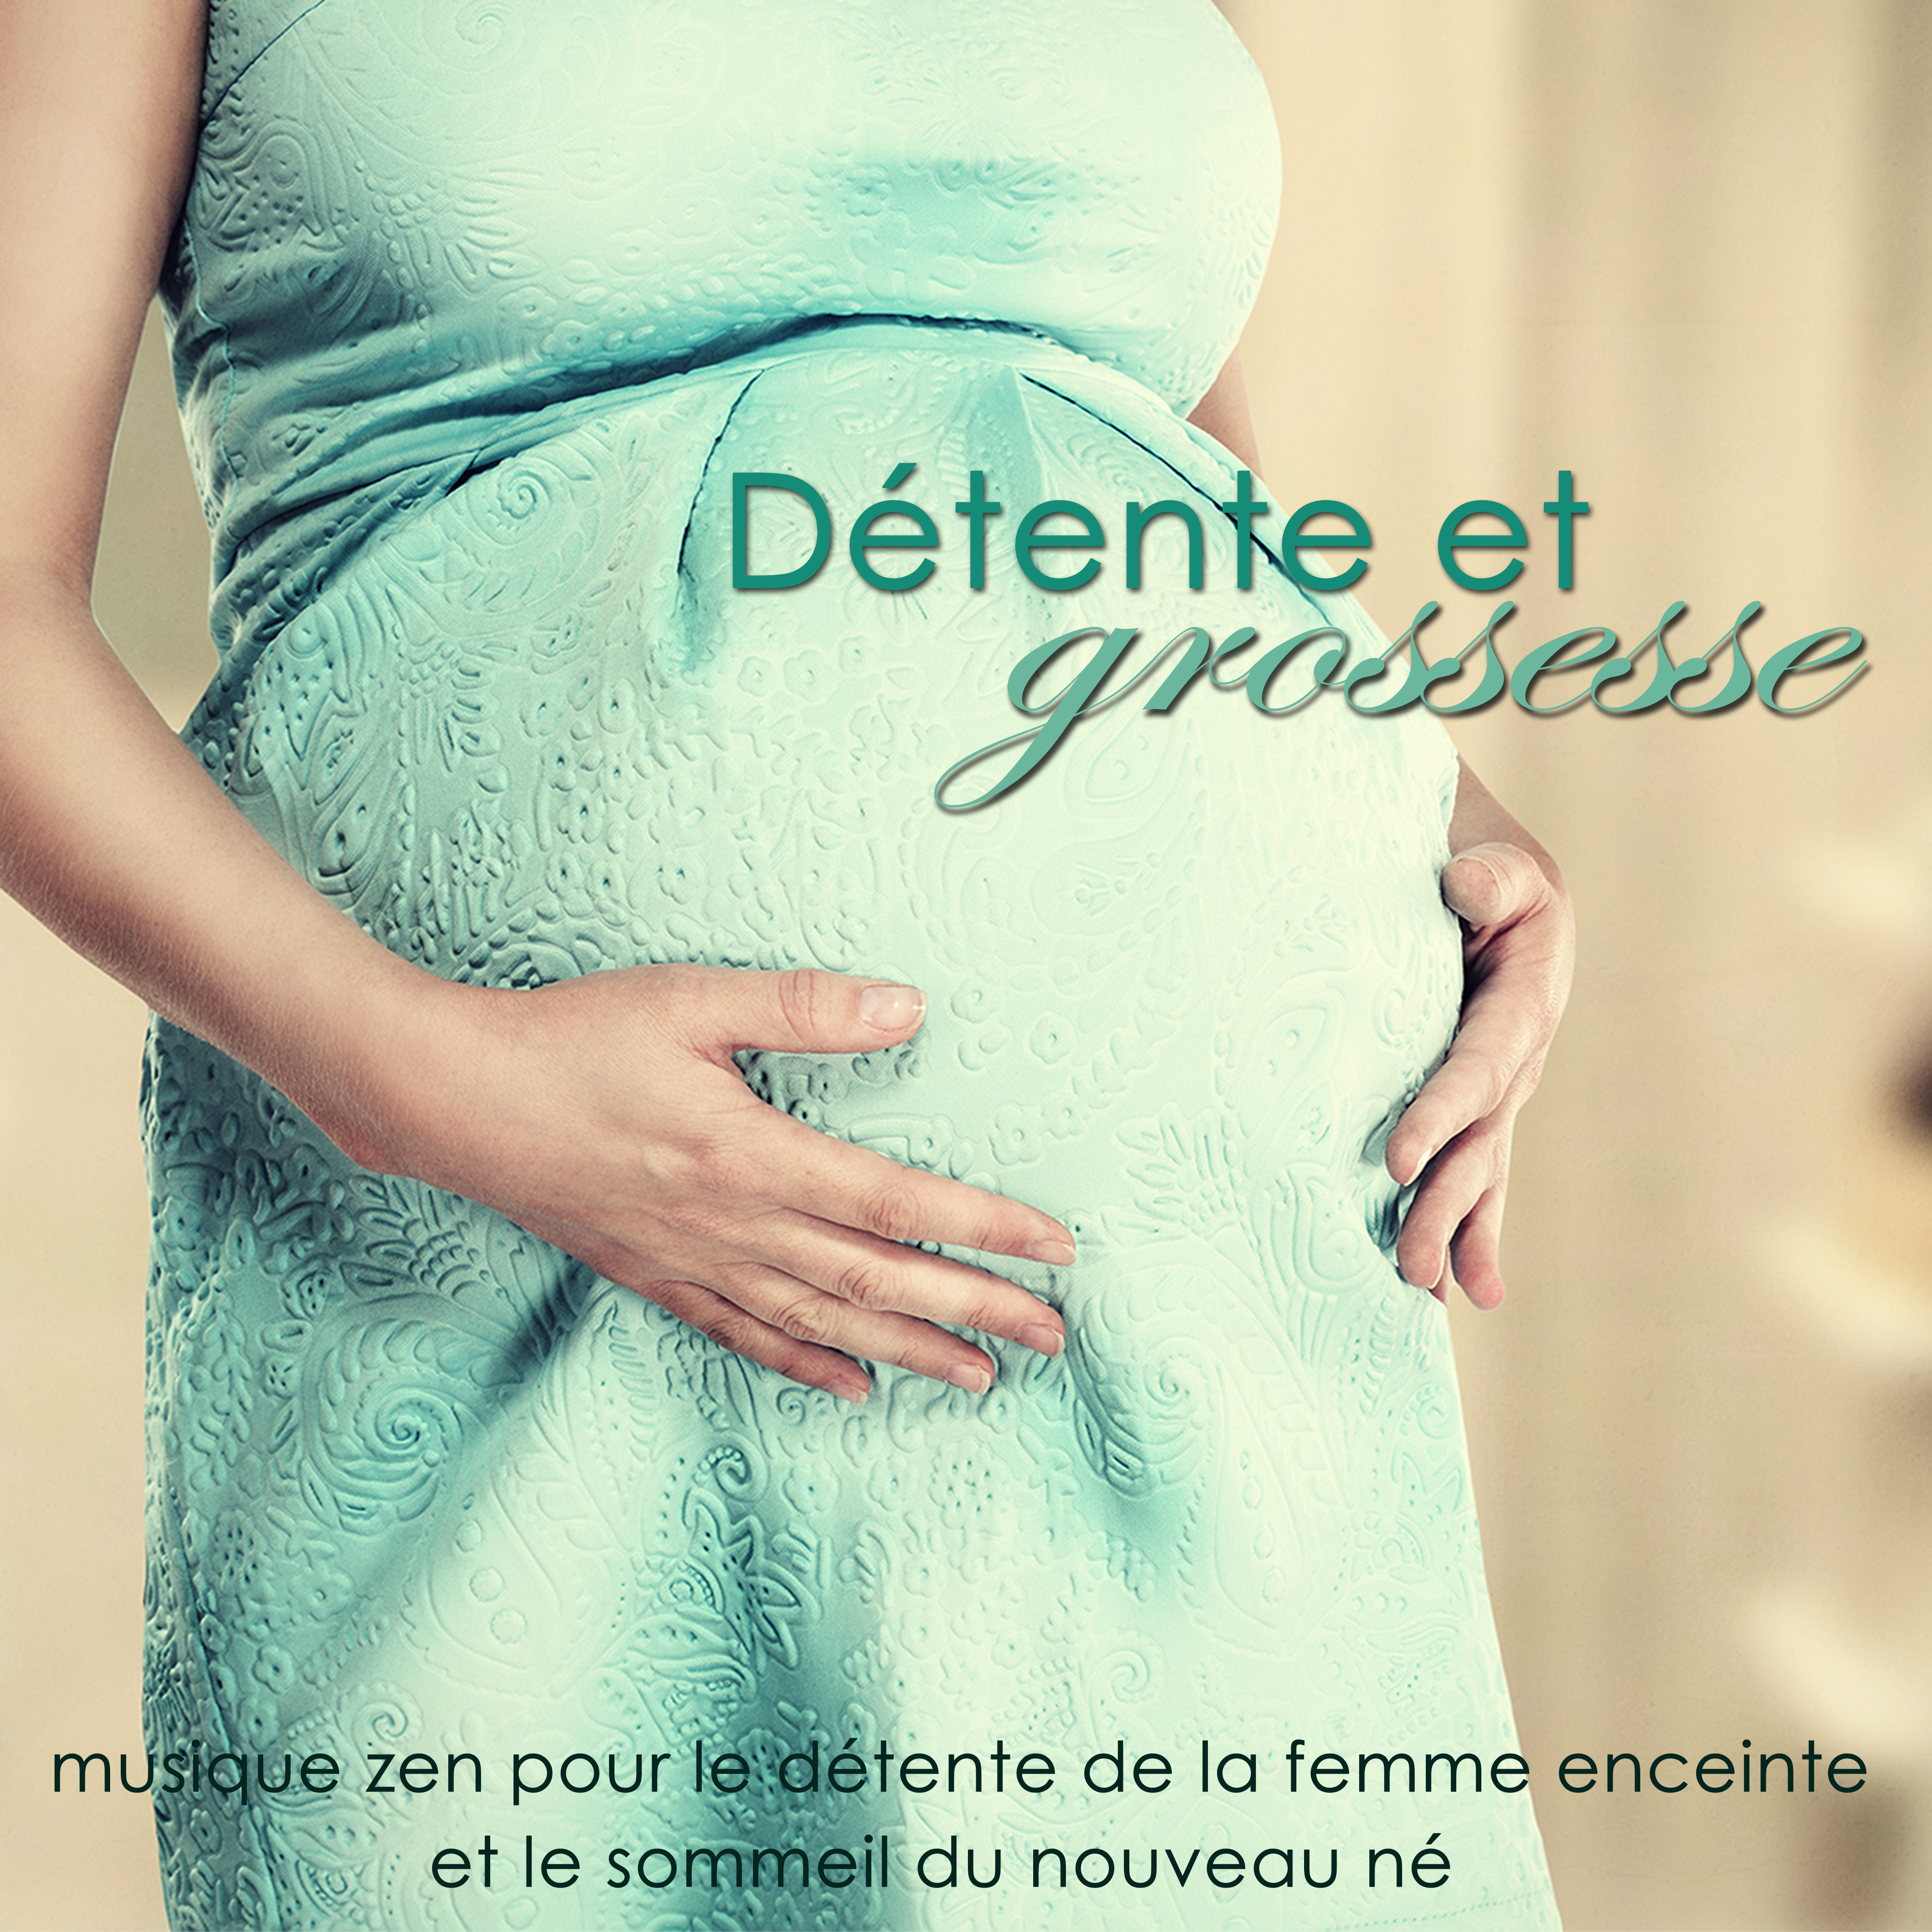 Détente et grossesse - Musique zen pour le détente de la femme enceinte et le sommeil du nouveau né